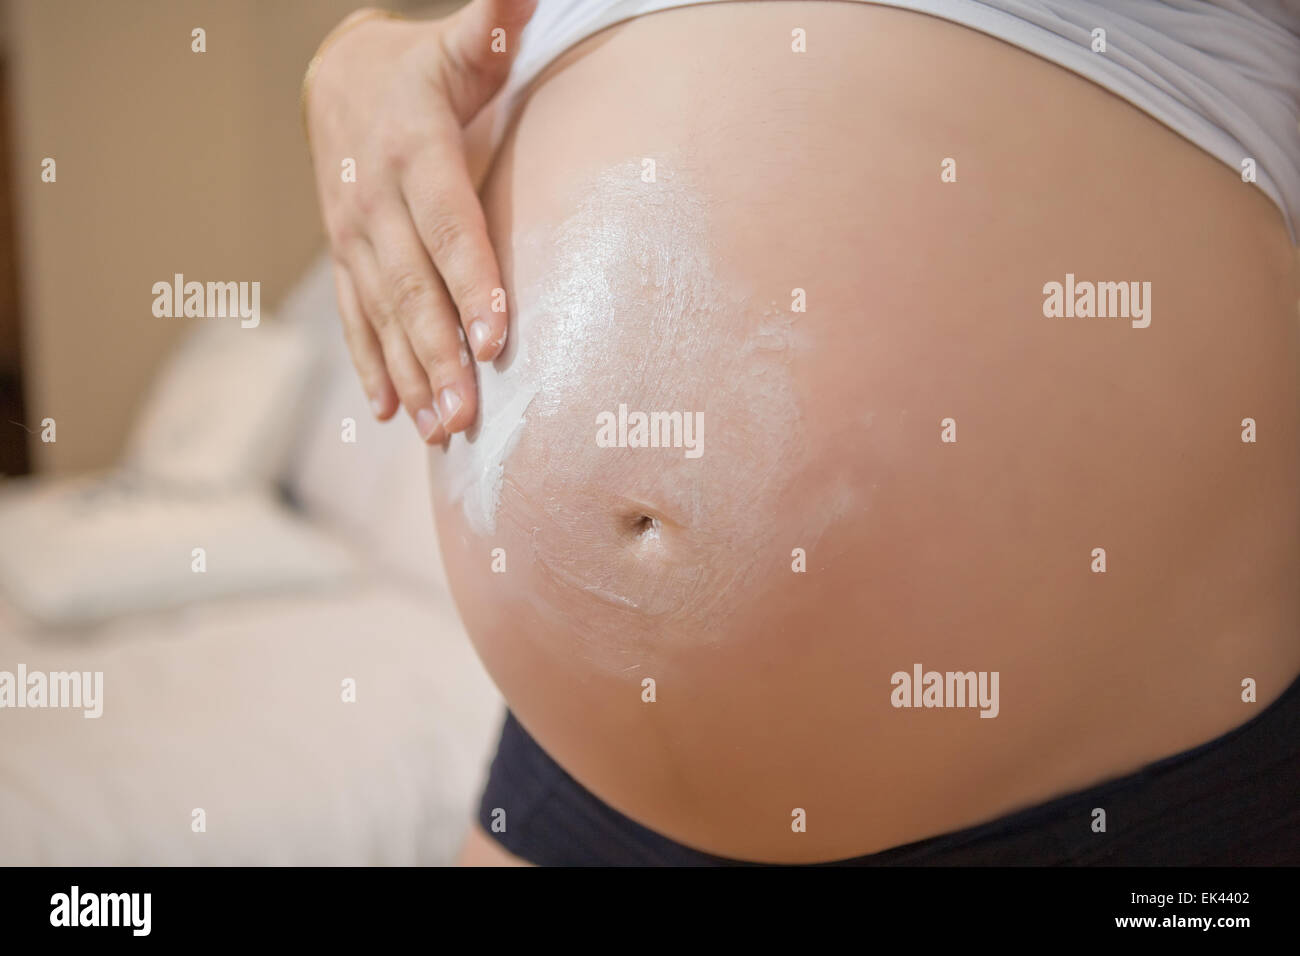 Ha sette mesi di gravidanza. Cura della pelle durante la gravidanza Foto Stock